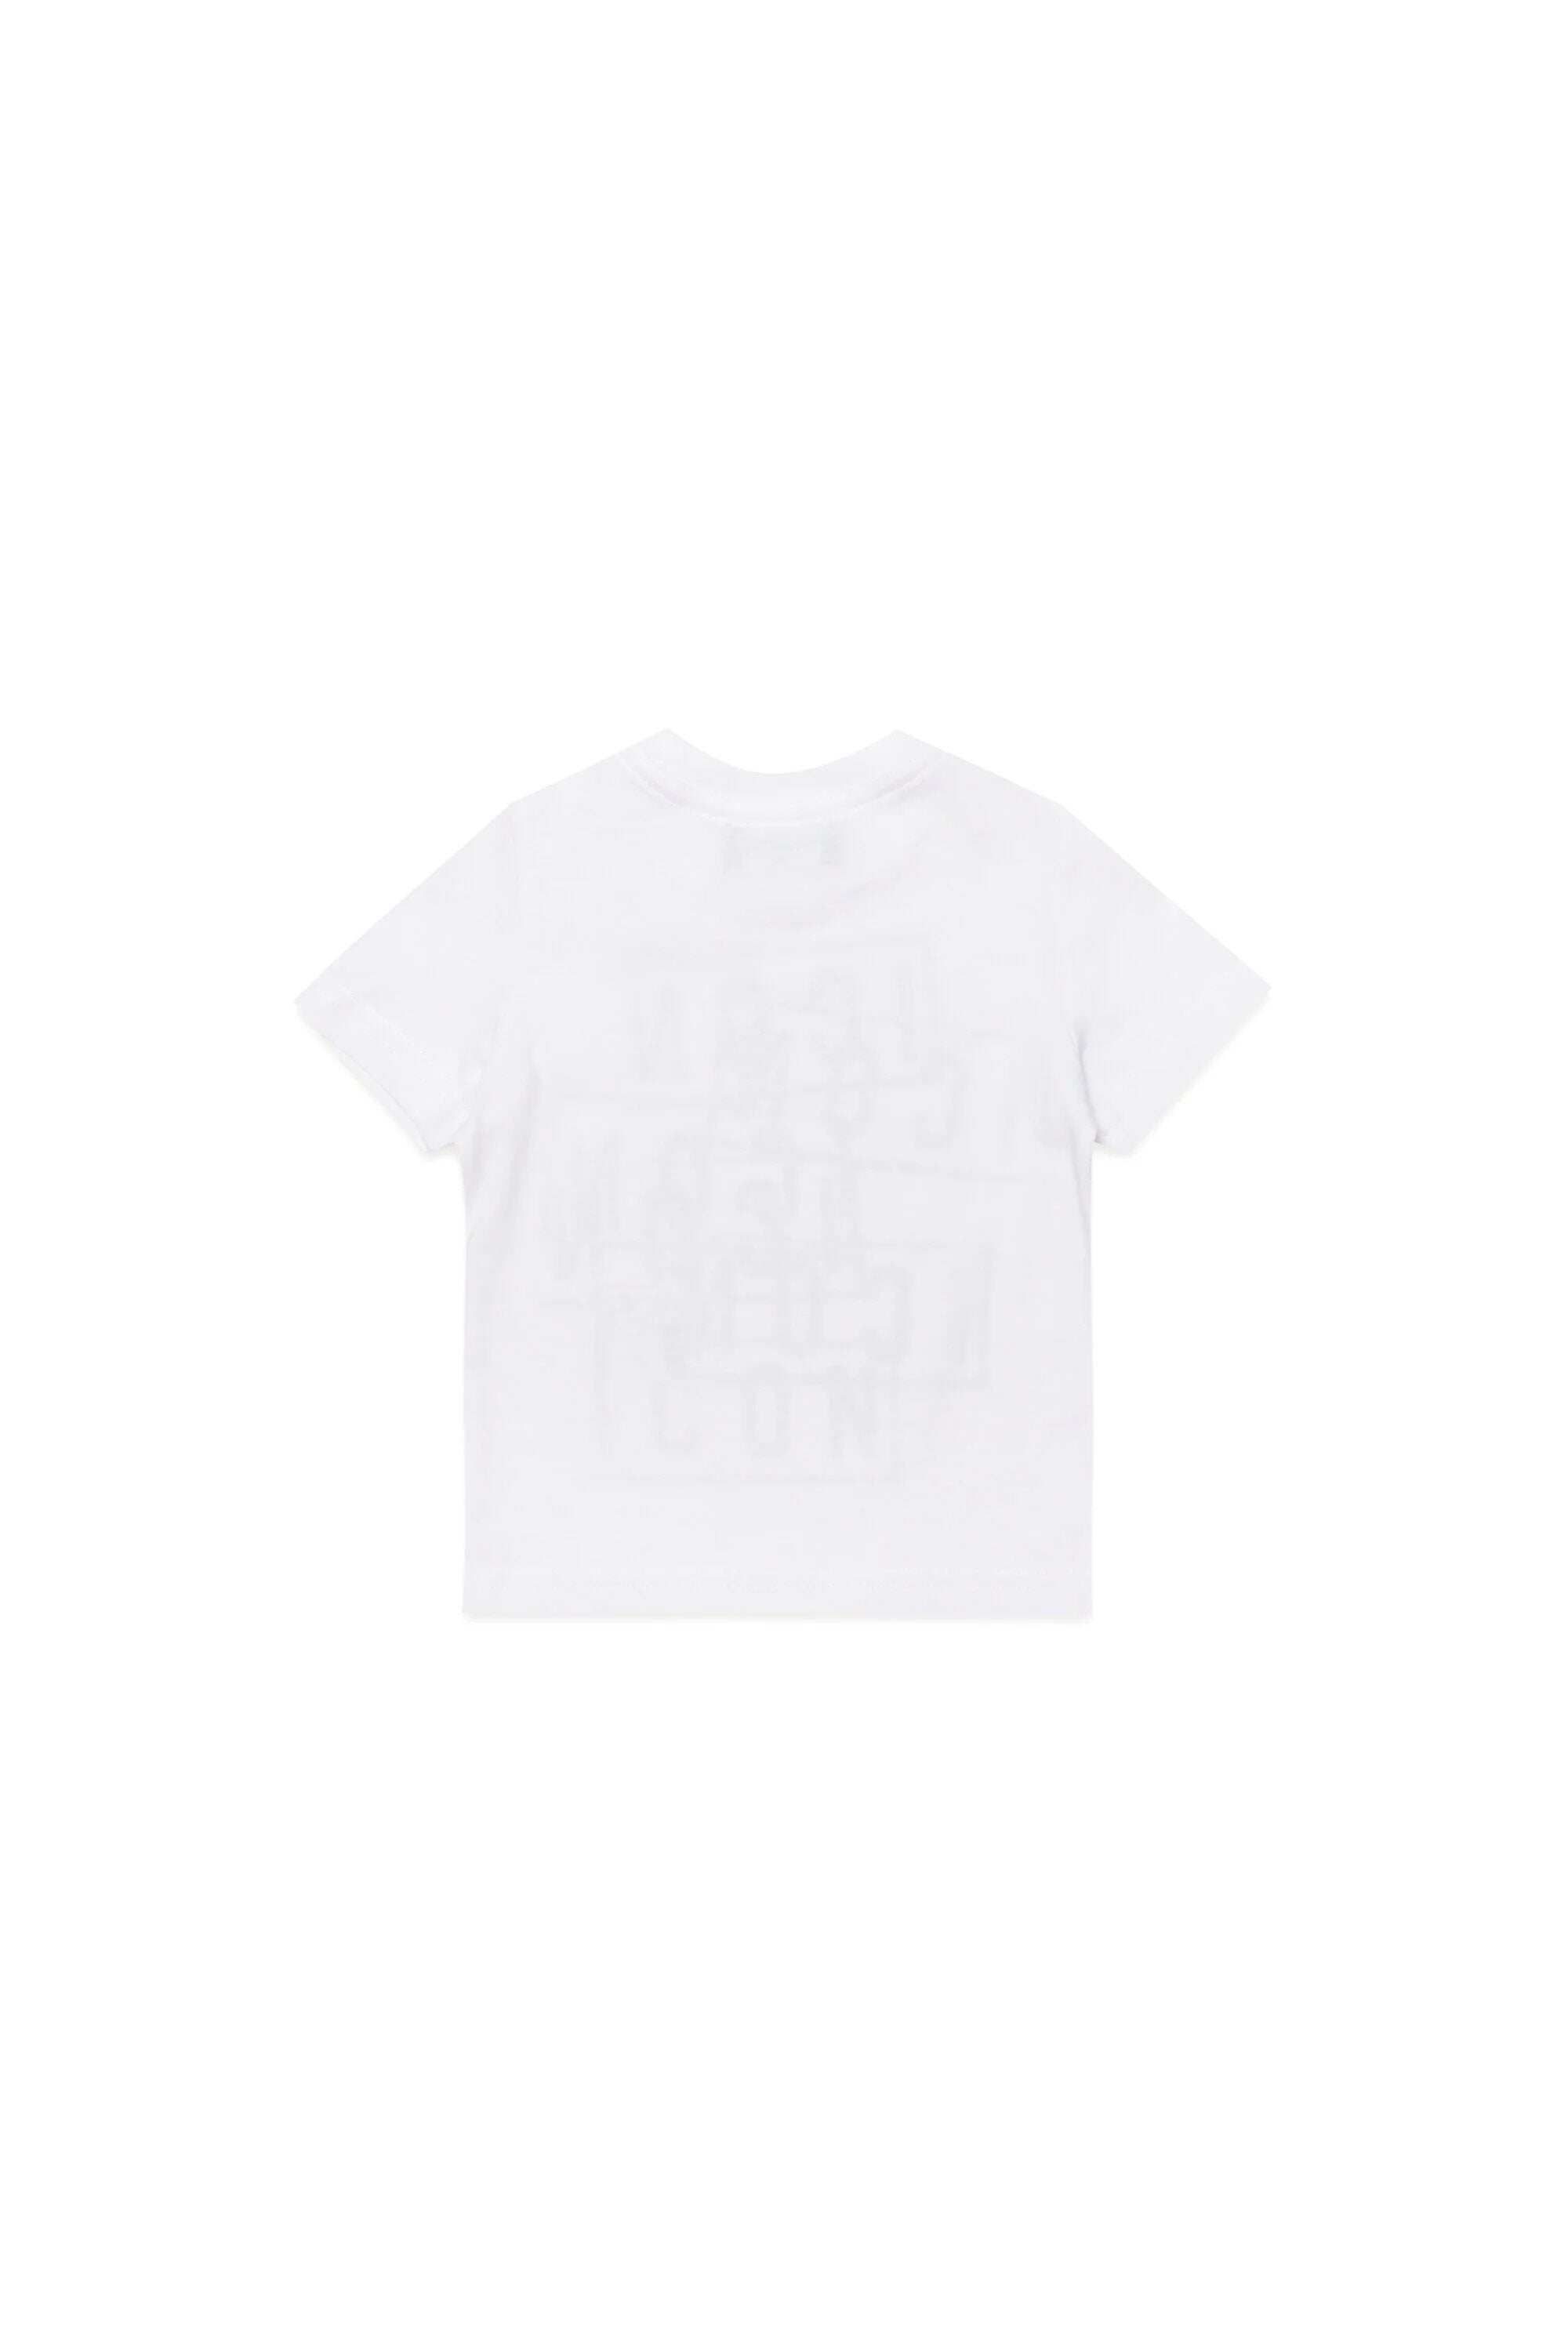 Dsquared2-T-shirt Unisex Bambino Icon-Bianco